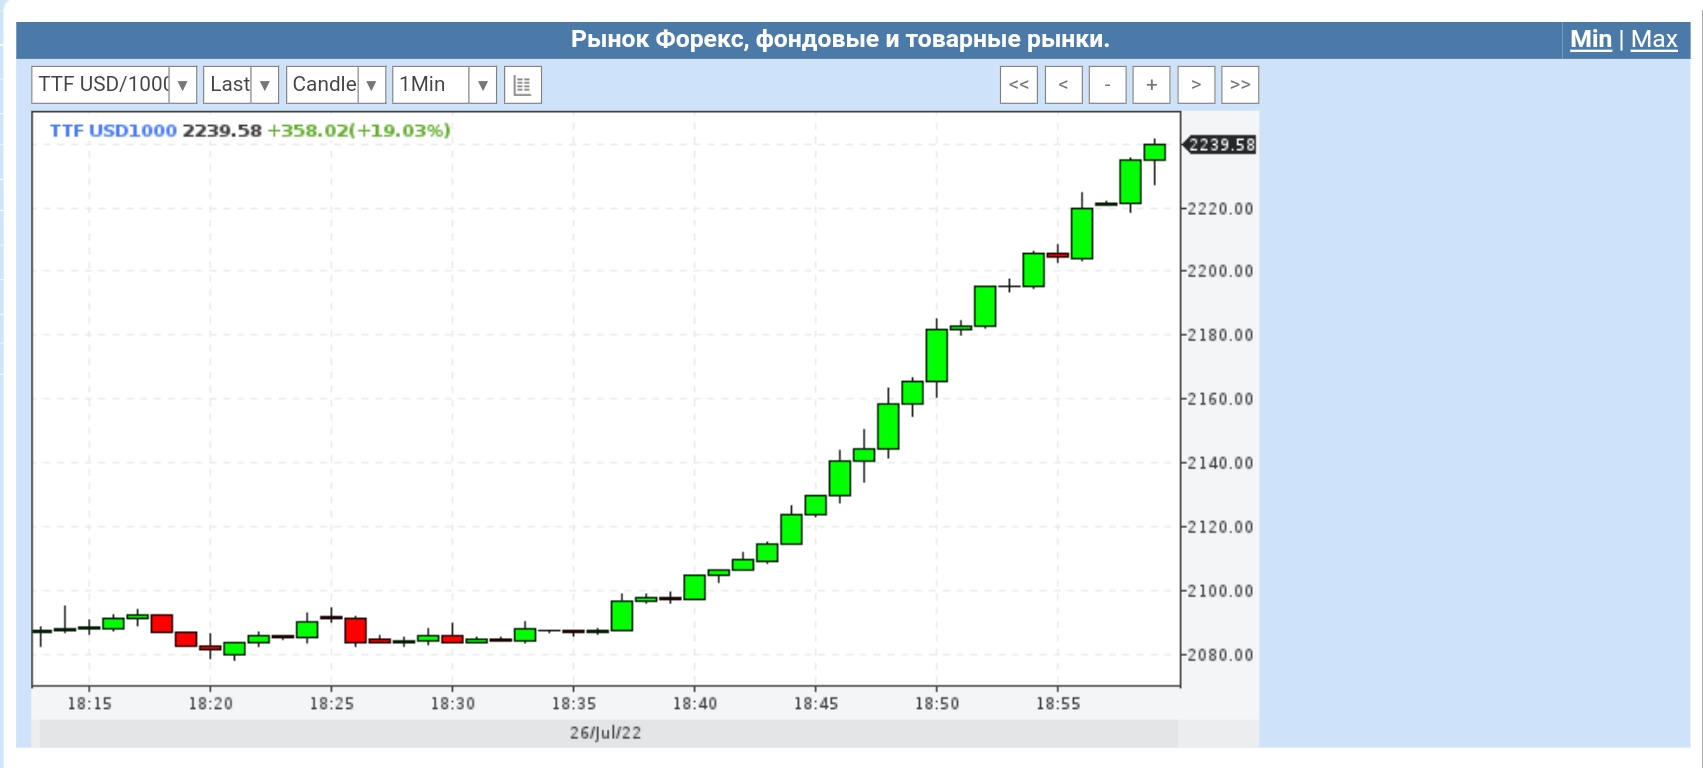 Газ кубометр цена биржа. Стоимость газа в Европе график. ГАЗ на графике. ГАЗ Европа биржа.